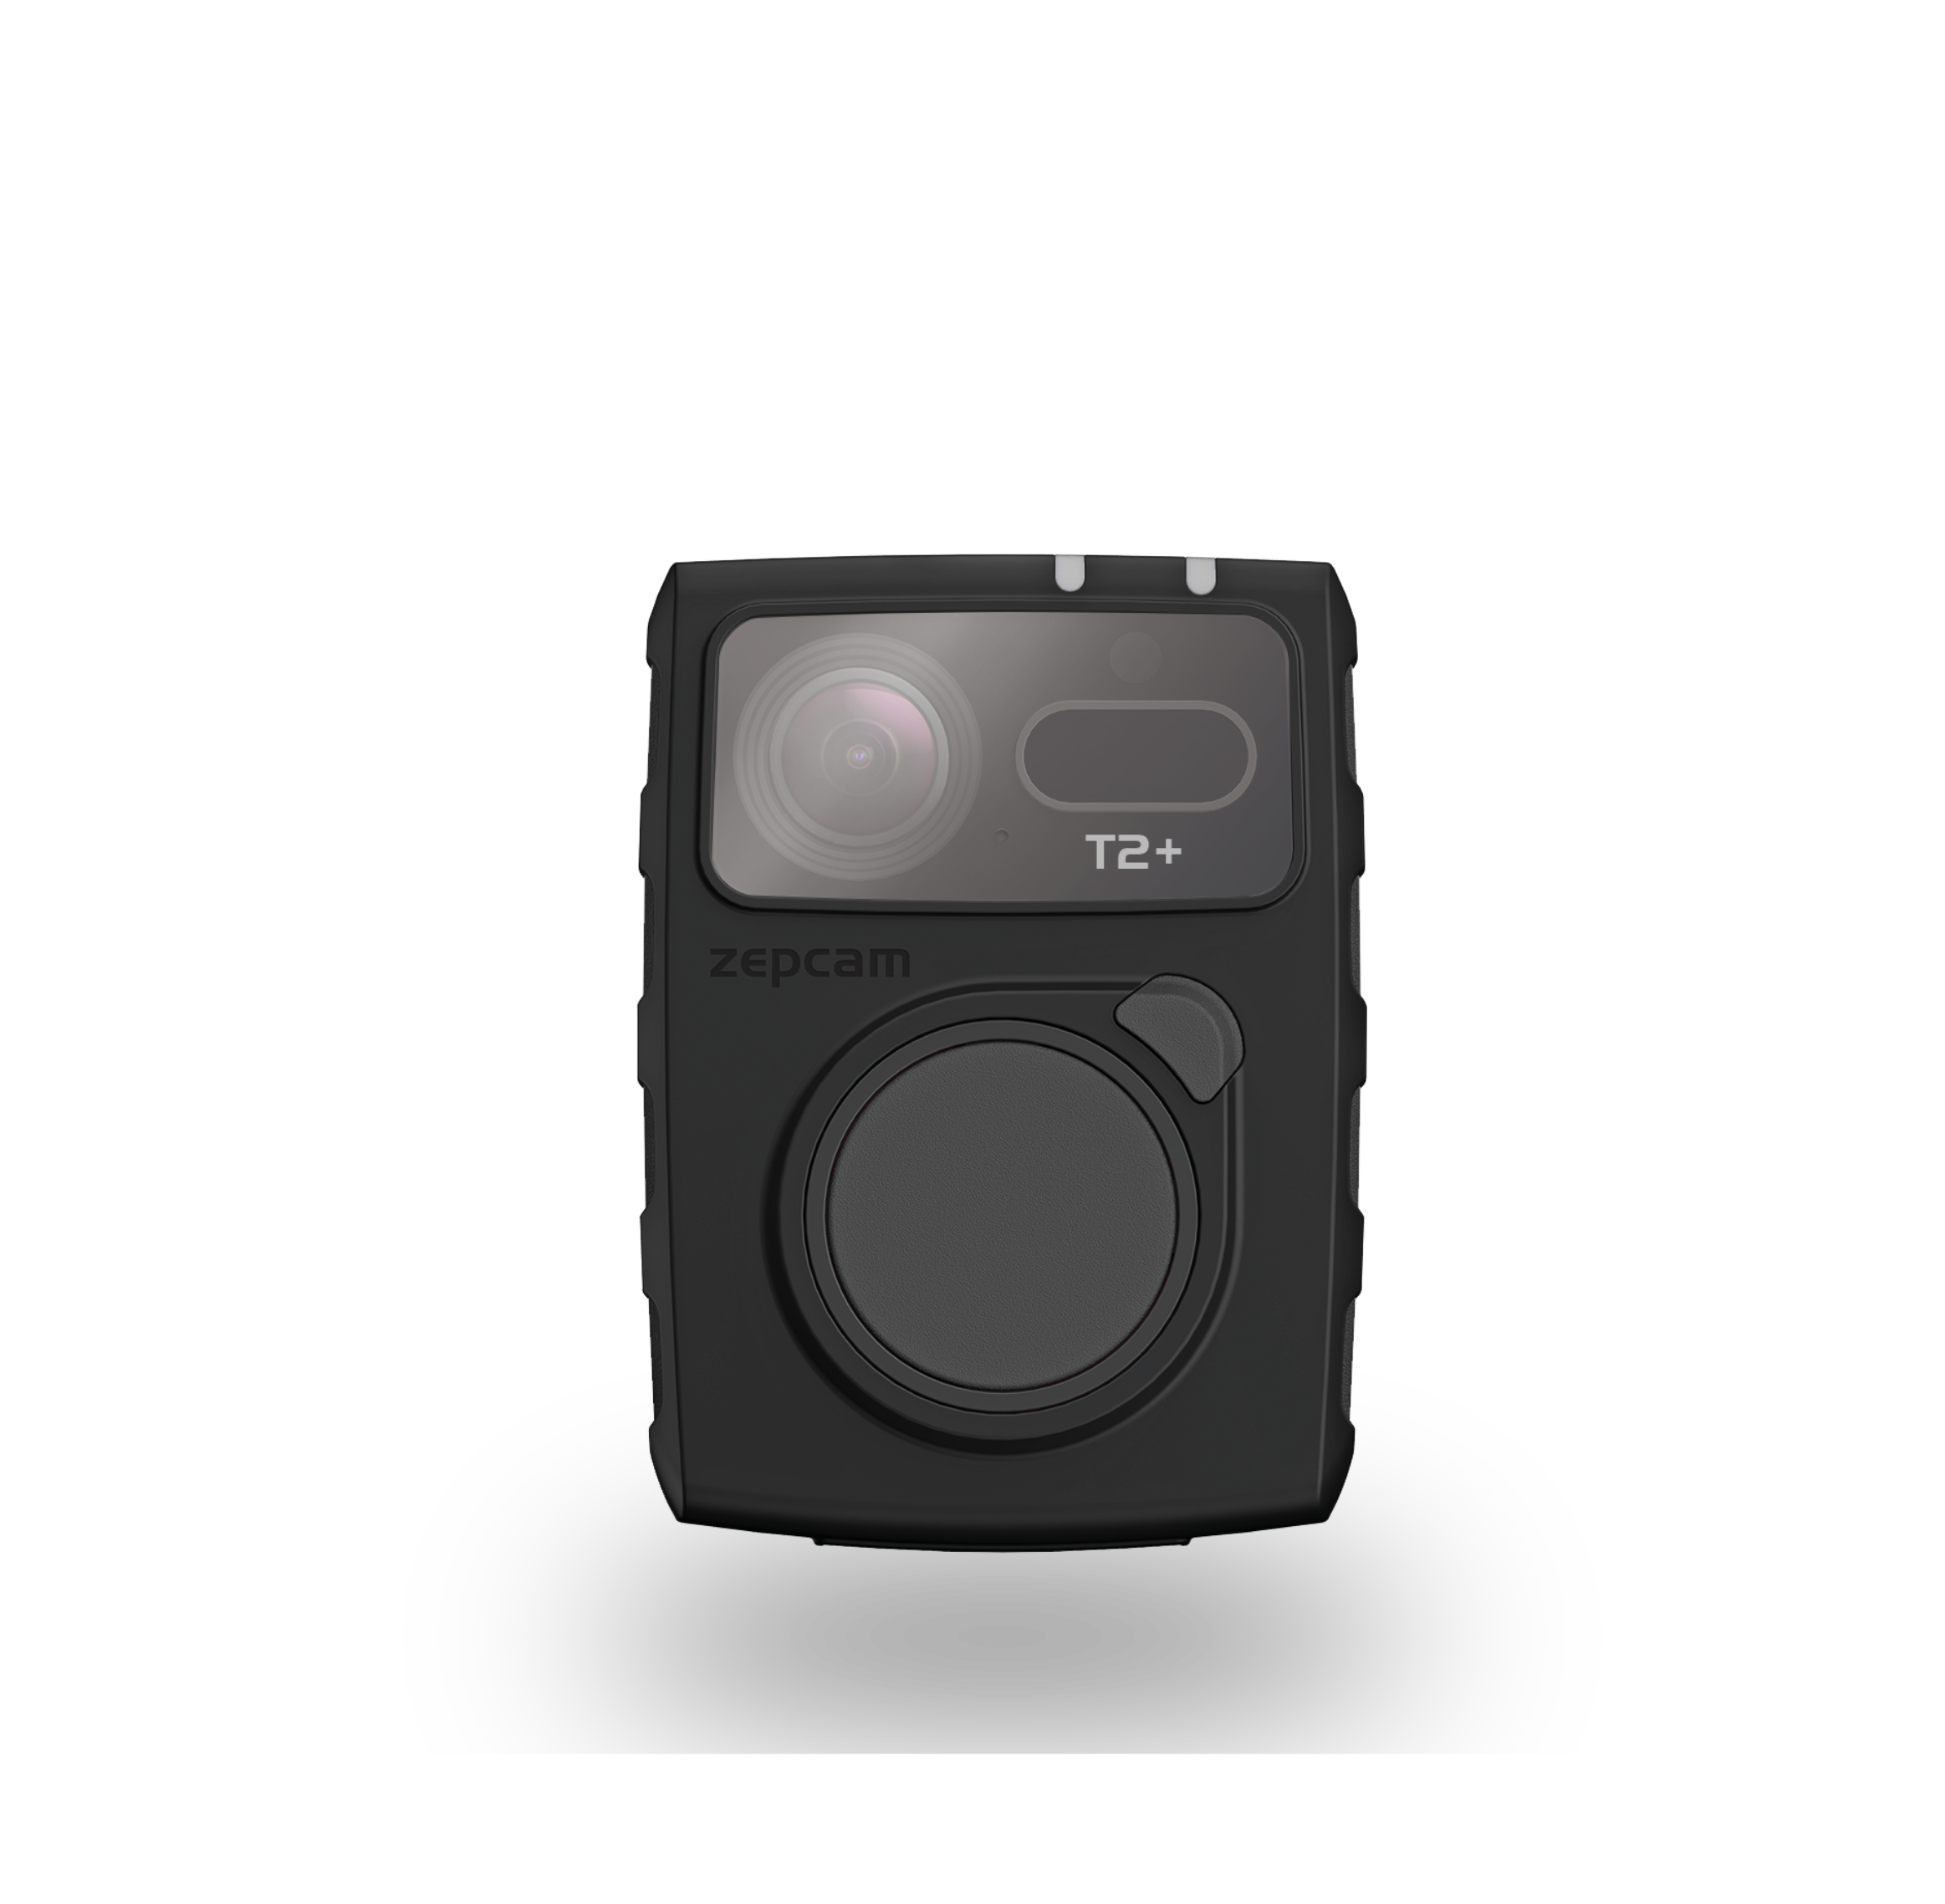 ZEPCAM T2+ kamera osobista